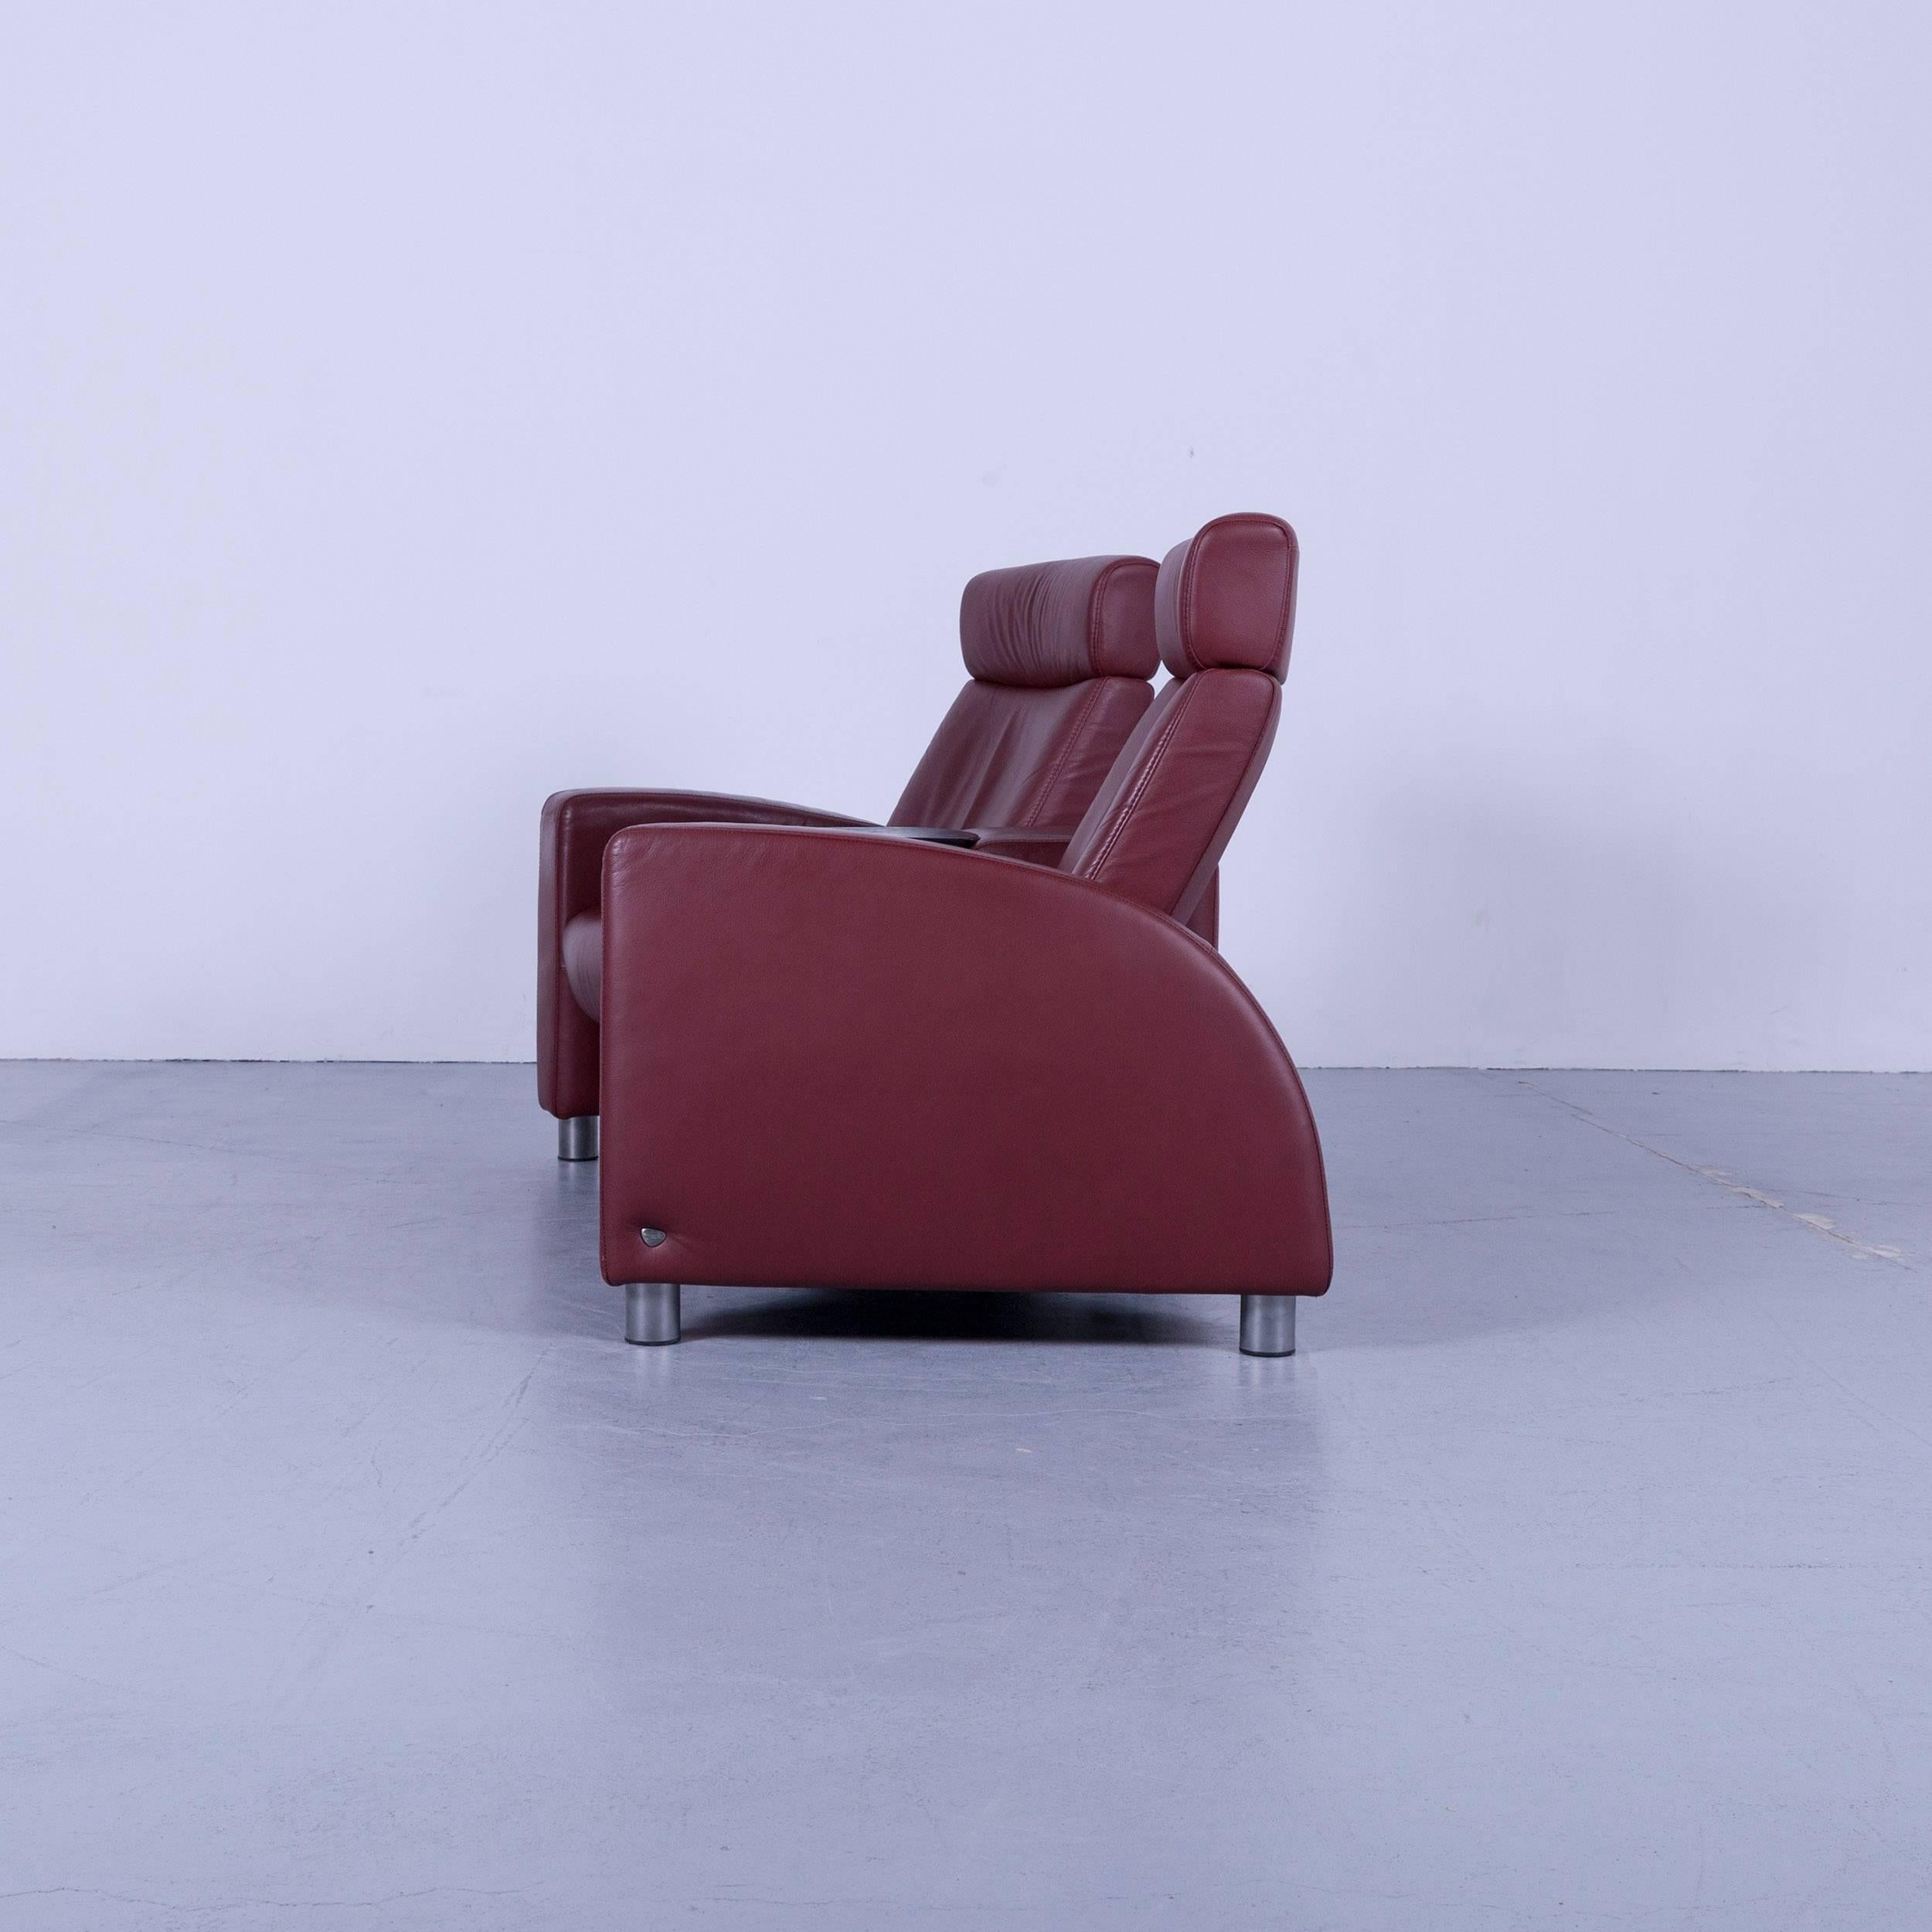 Fauteuil de relaxation en cuir Arion rouge Cinema-Sofa Stressless d'Ekornes 3